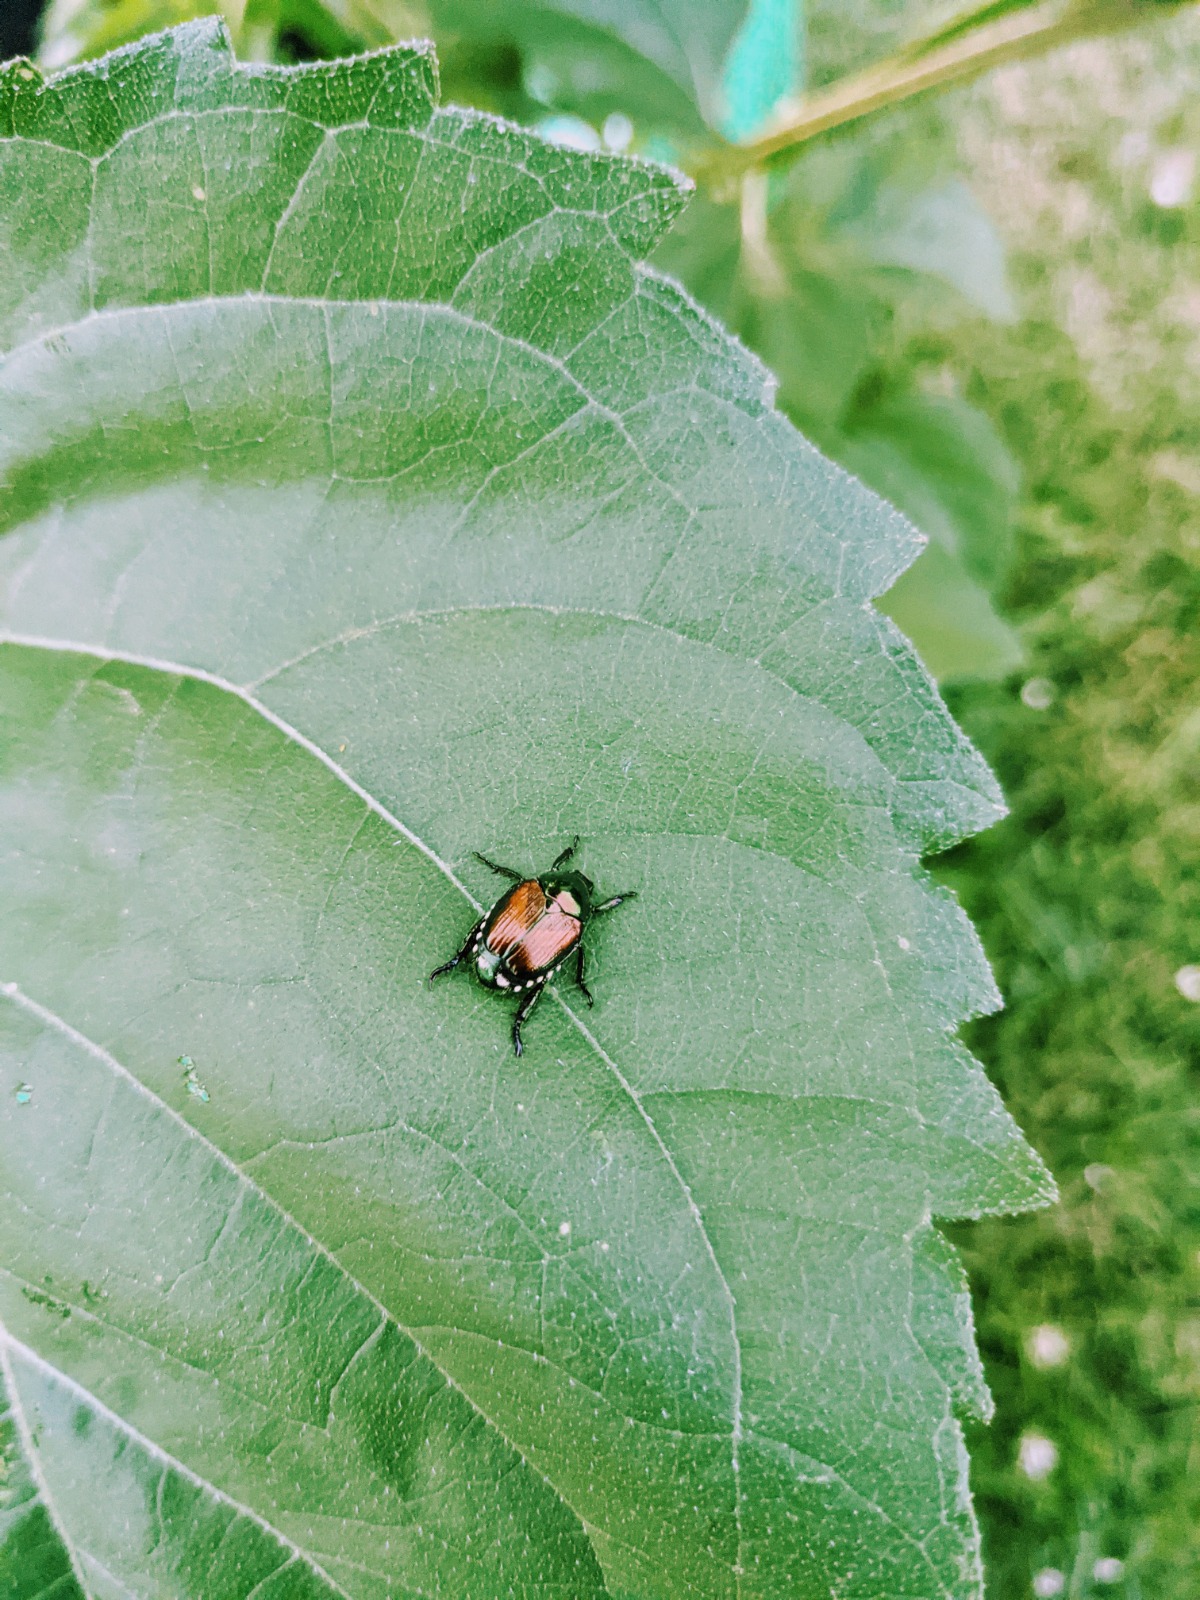 Japanese Beetle on a Sunflower Leaf